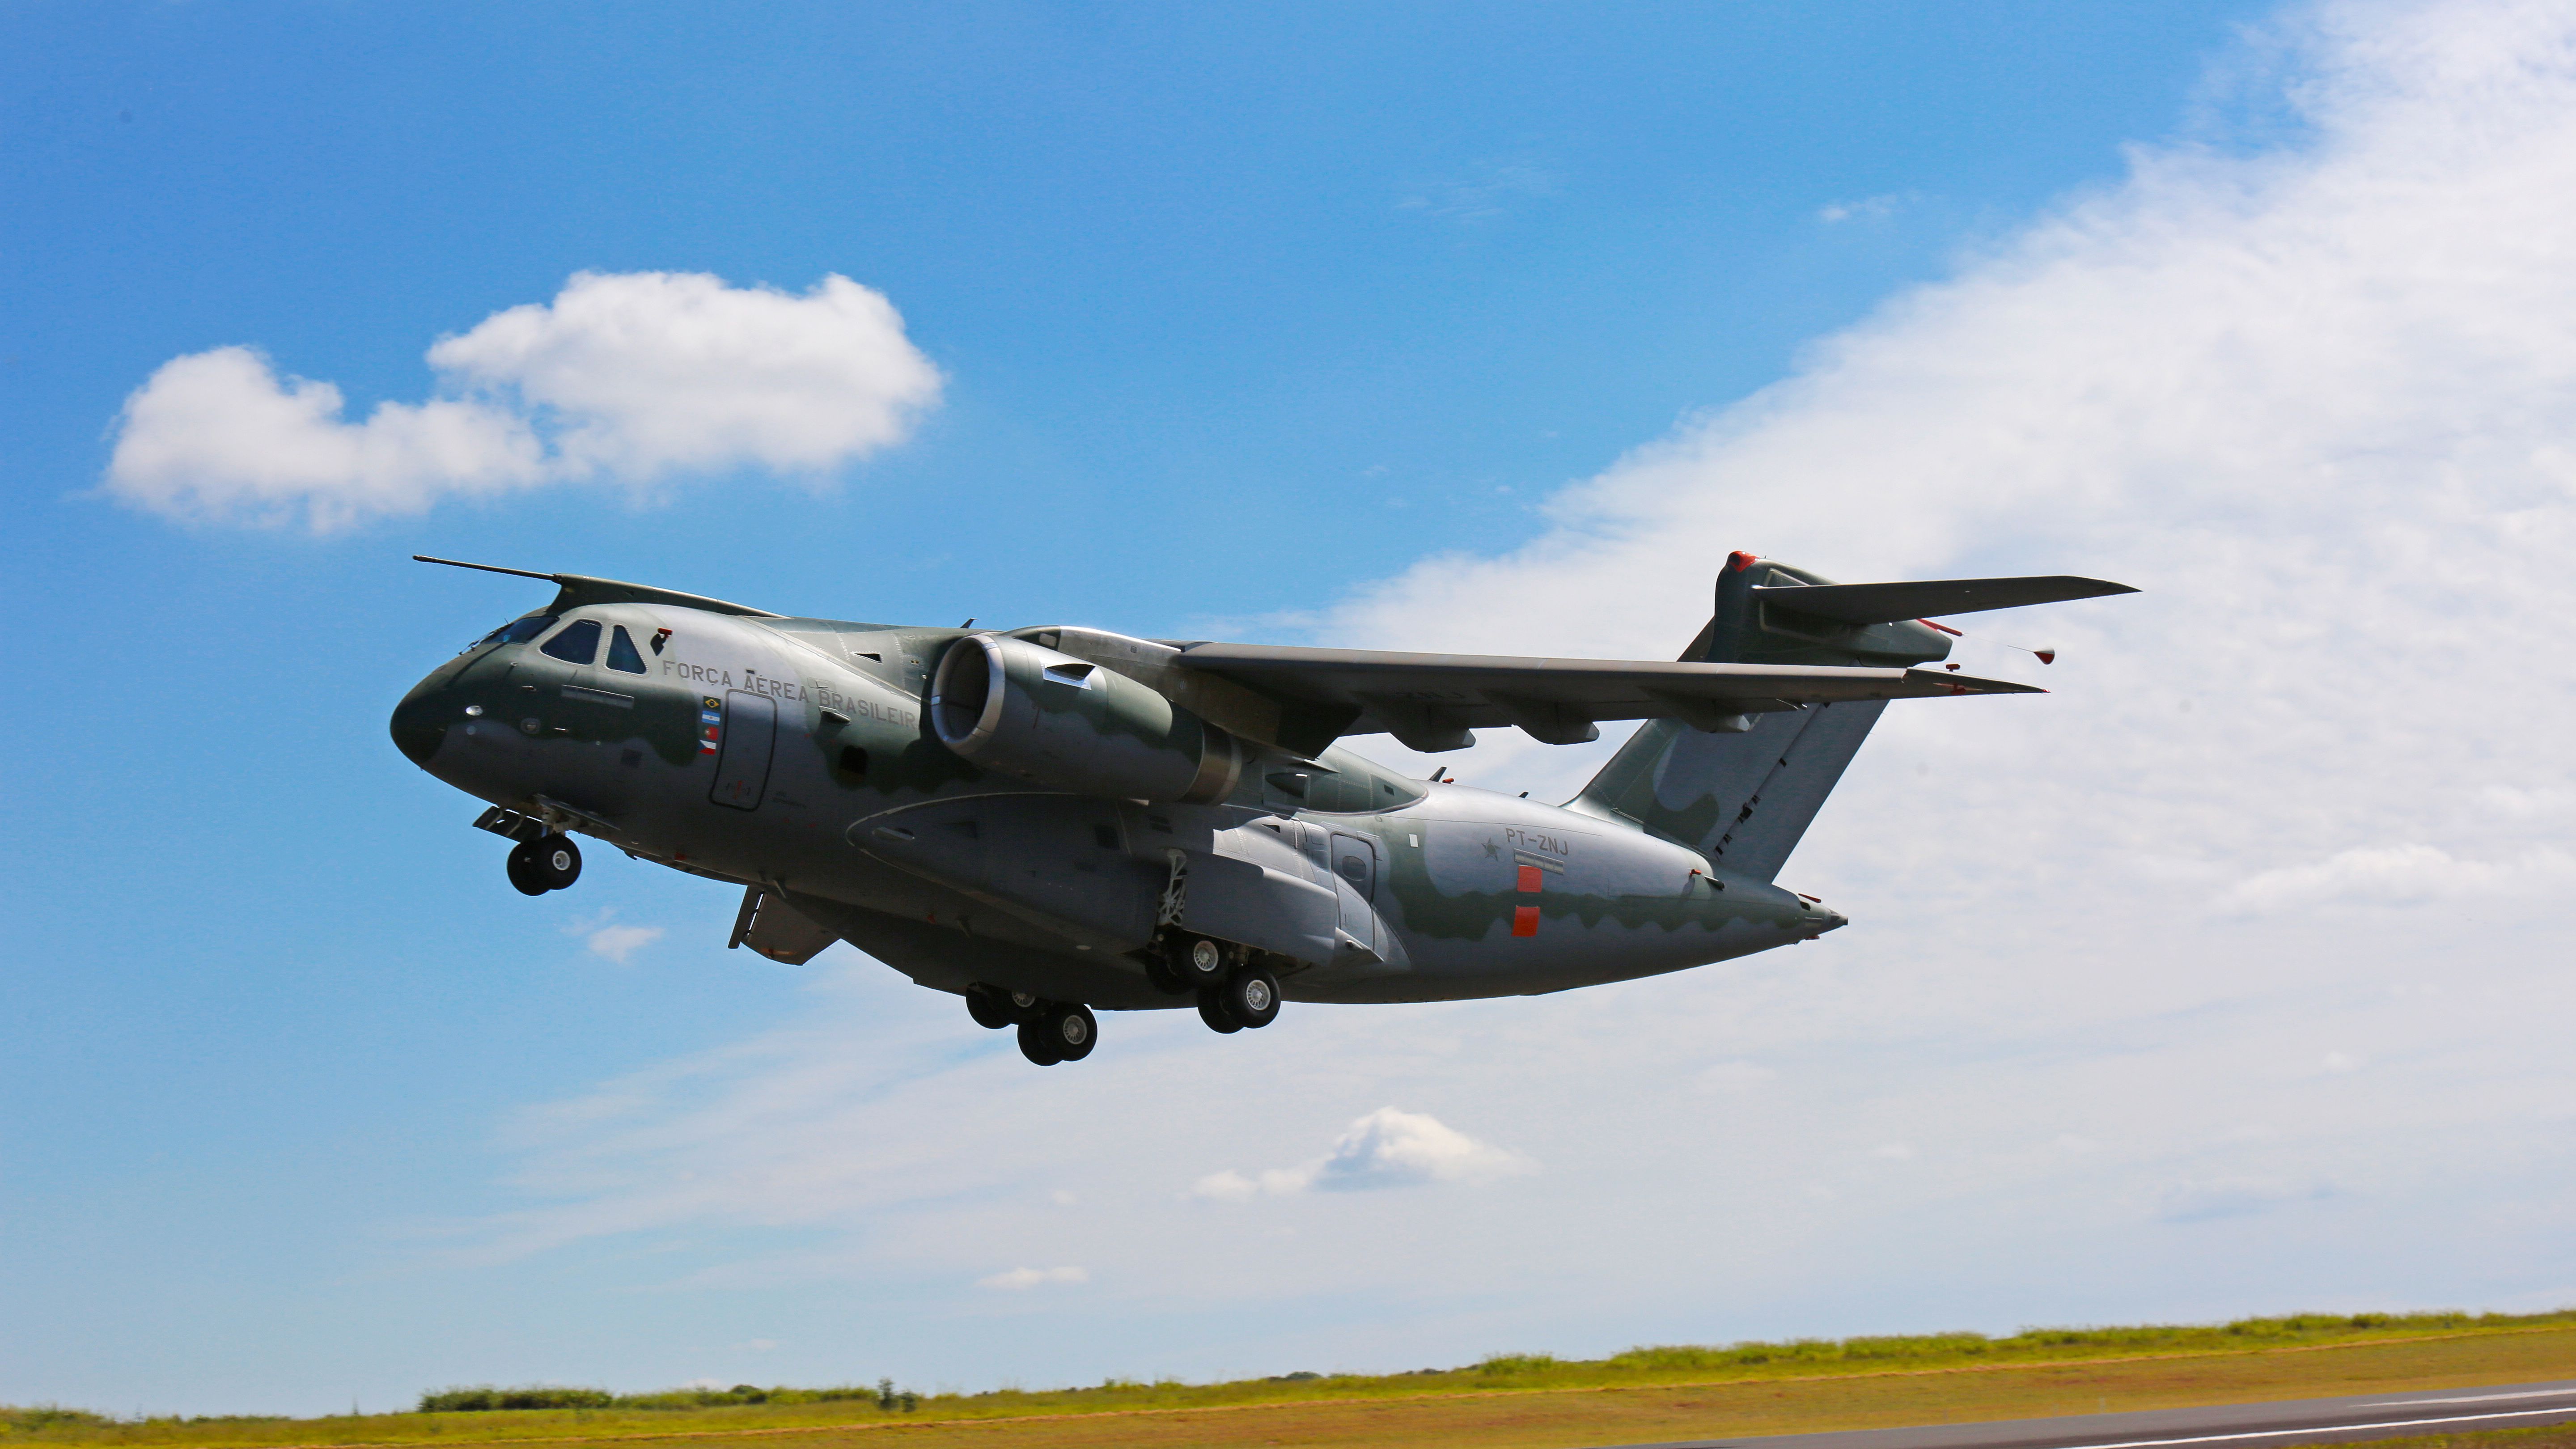 KC-390: Conheça os detalhes do projeto do maior avião produzido no